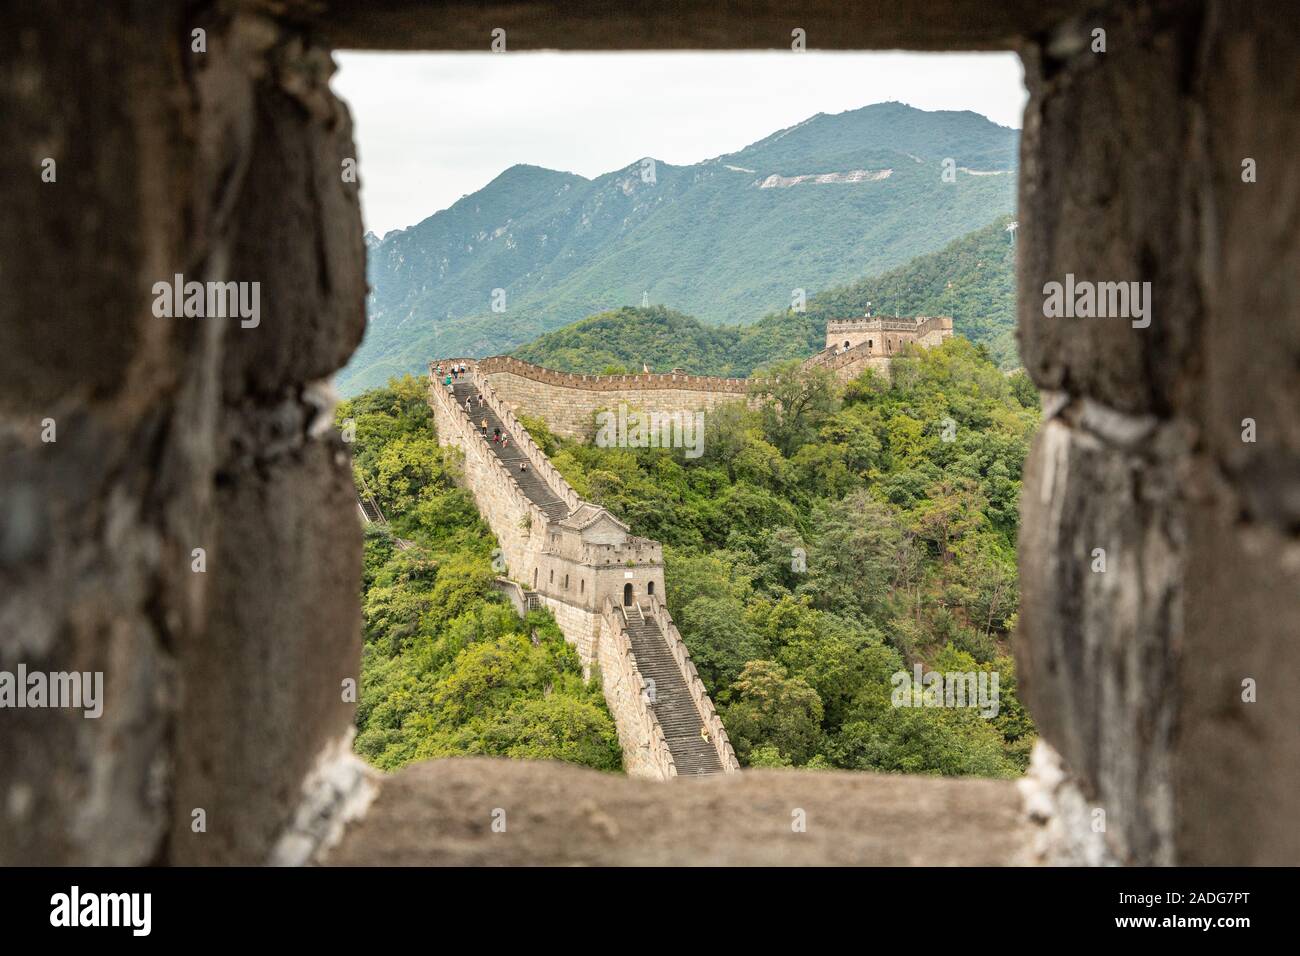 Die Große Mauer in China ein UNESCO-Weltkulturerbe von Mutianyu im huairou Distrikt, 70 km nördlich von Peking China gesehen Stockfoto